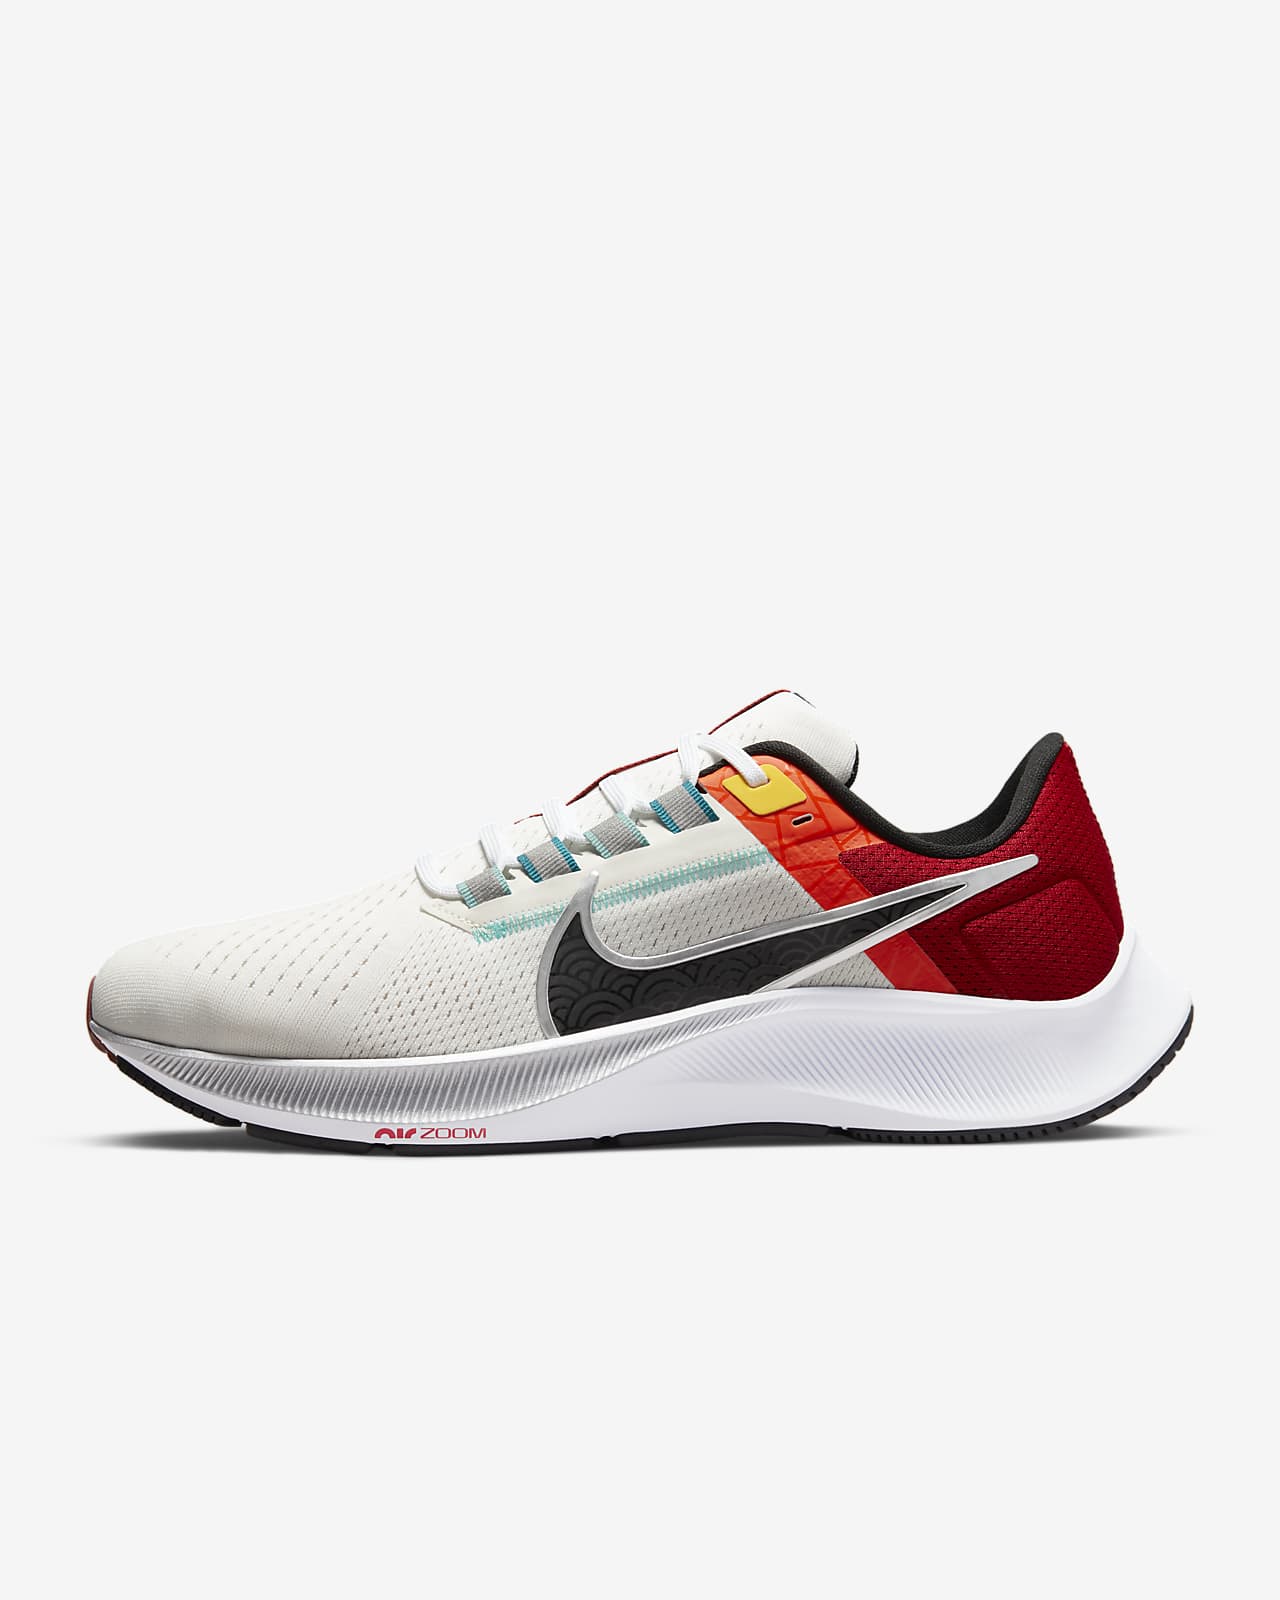 Gaseous Joseph Banks twist Nike Air Zoom Pegasus 38 Men's Road Running Shoes. Nike.com